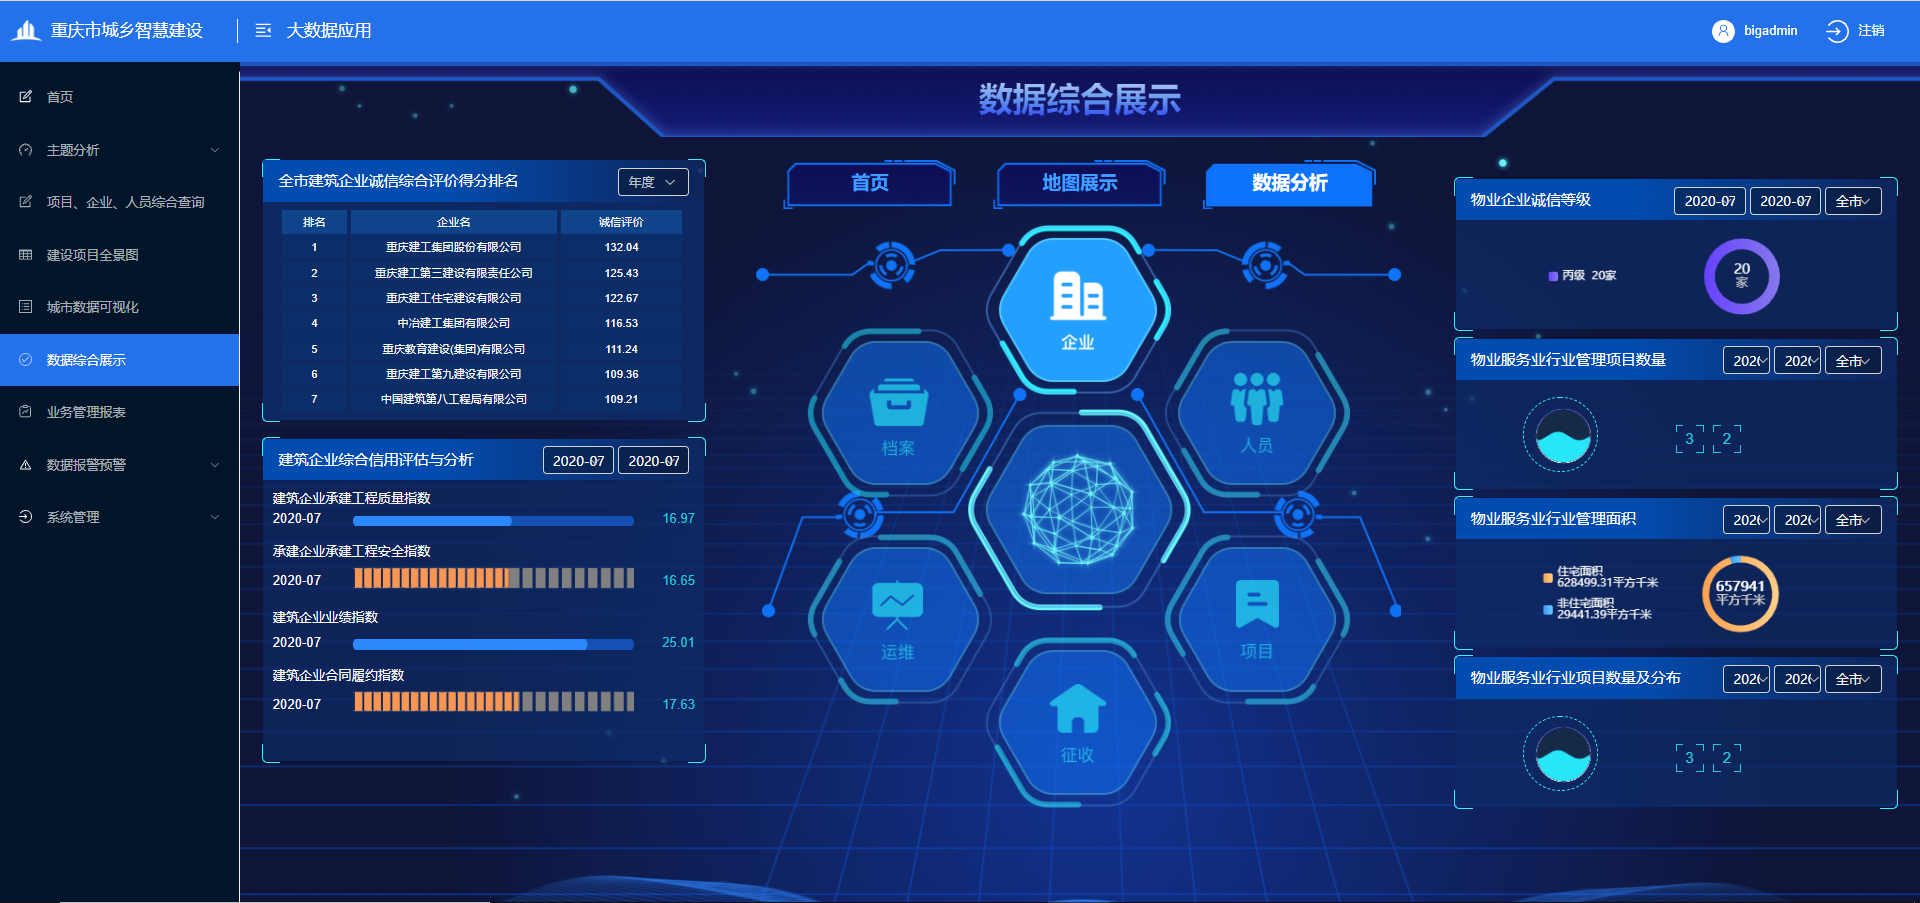 【A】重庆：28亿条数据资产助推“智慧住建”提效升级